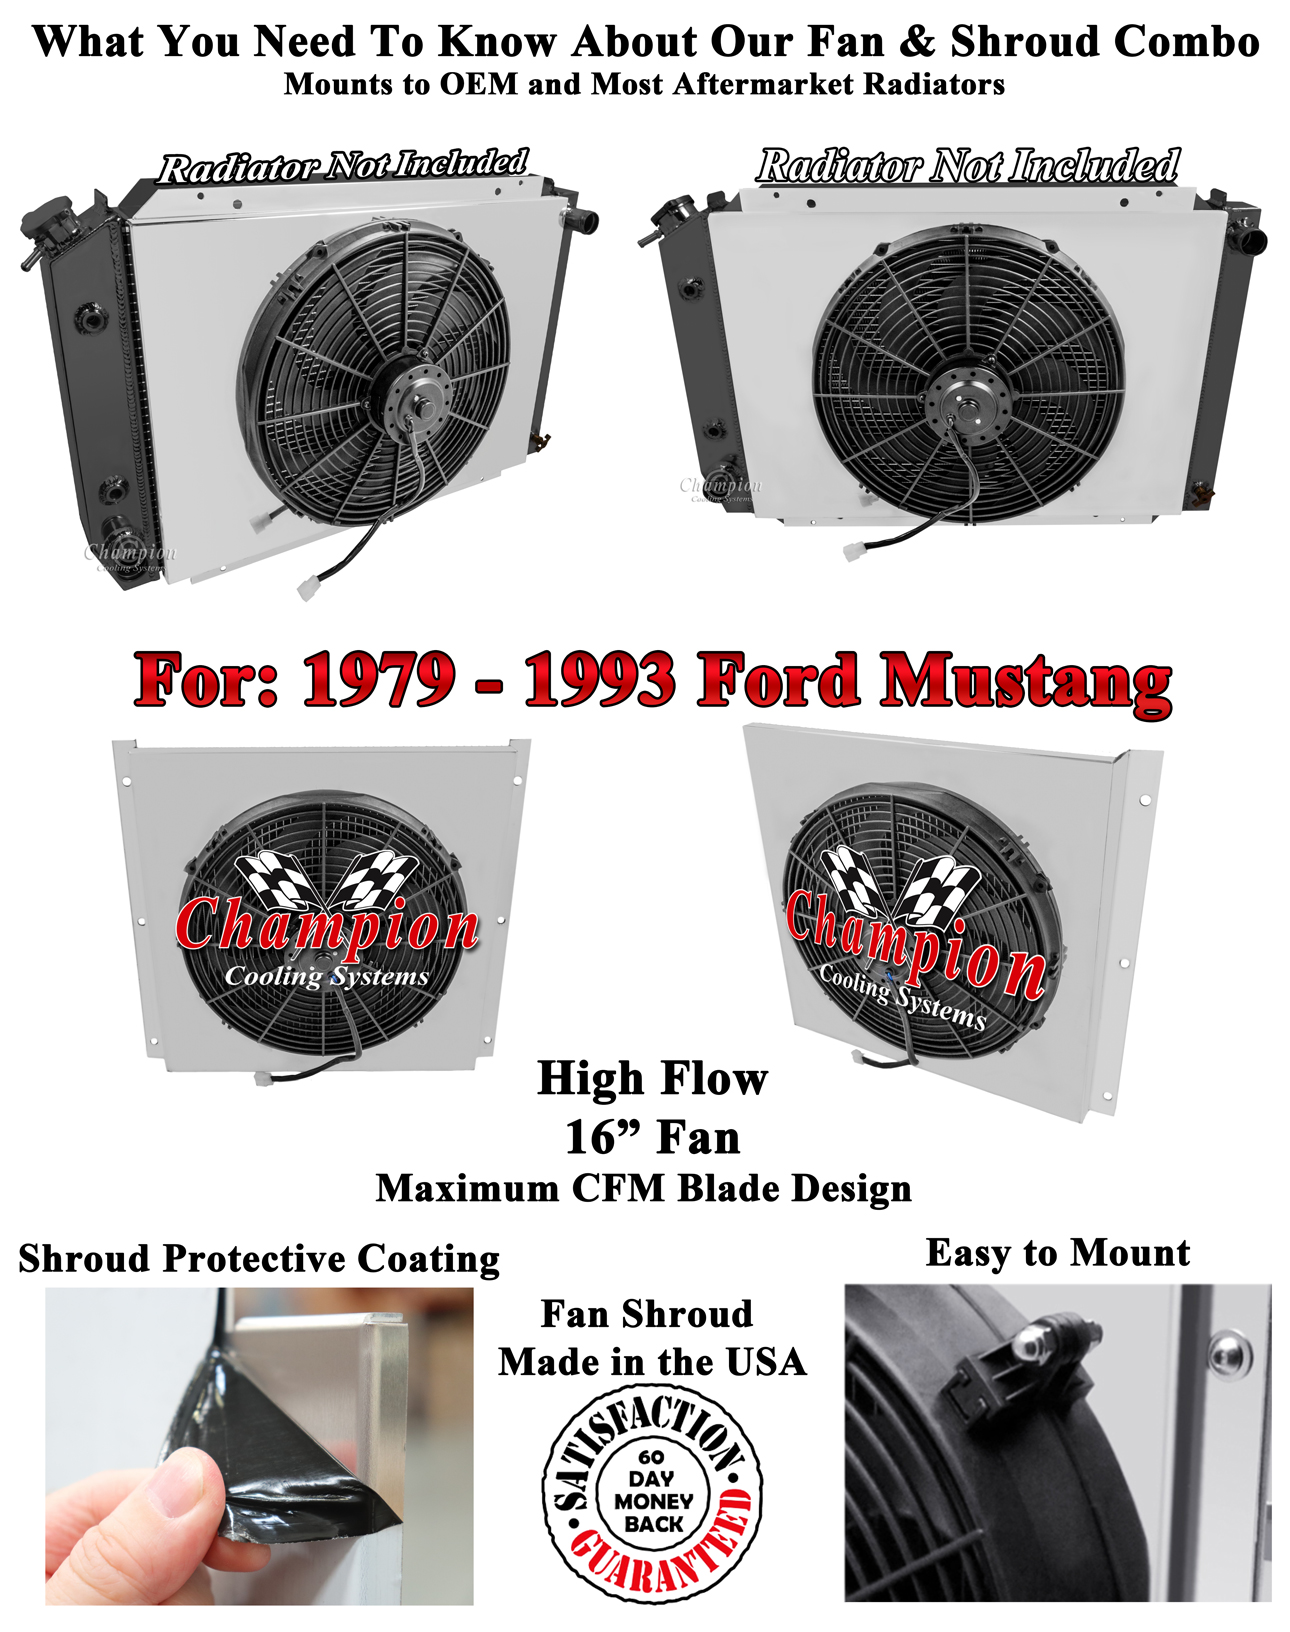 Eagle Champion All Aluminum Fan Shroud W/ 16" Fan for 1979 - 1993 Ford Mustang